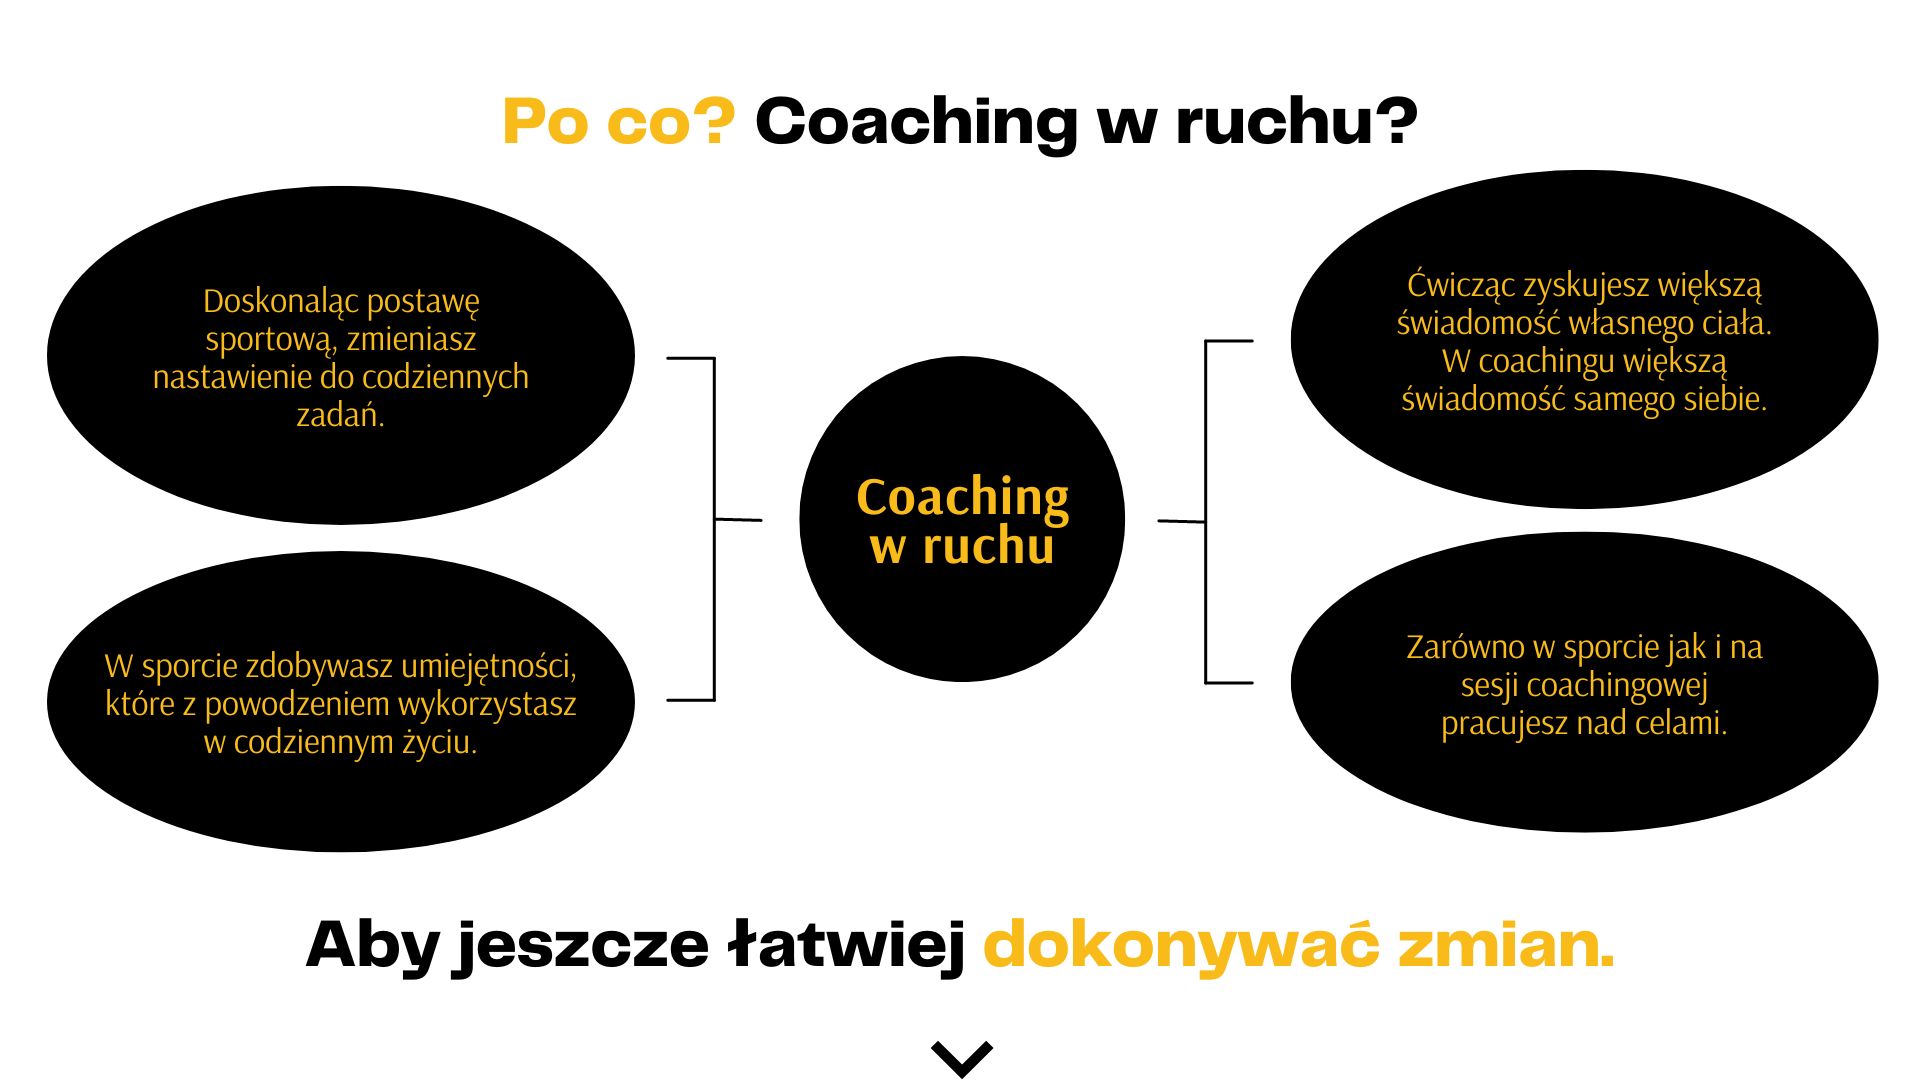 Po co coaching w ruchu